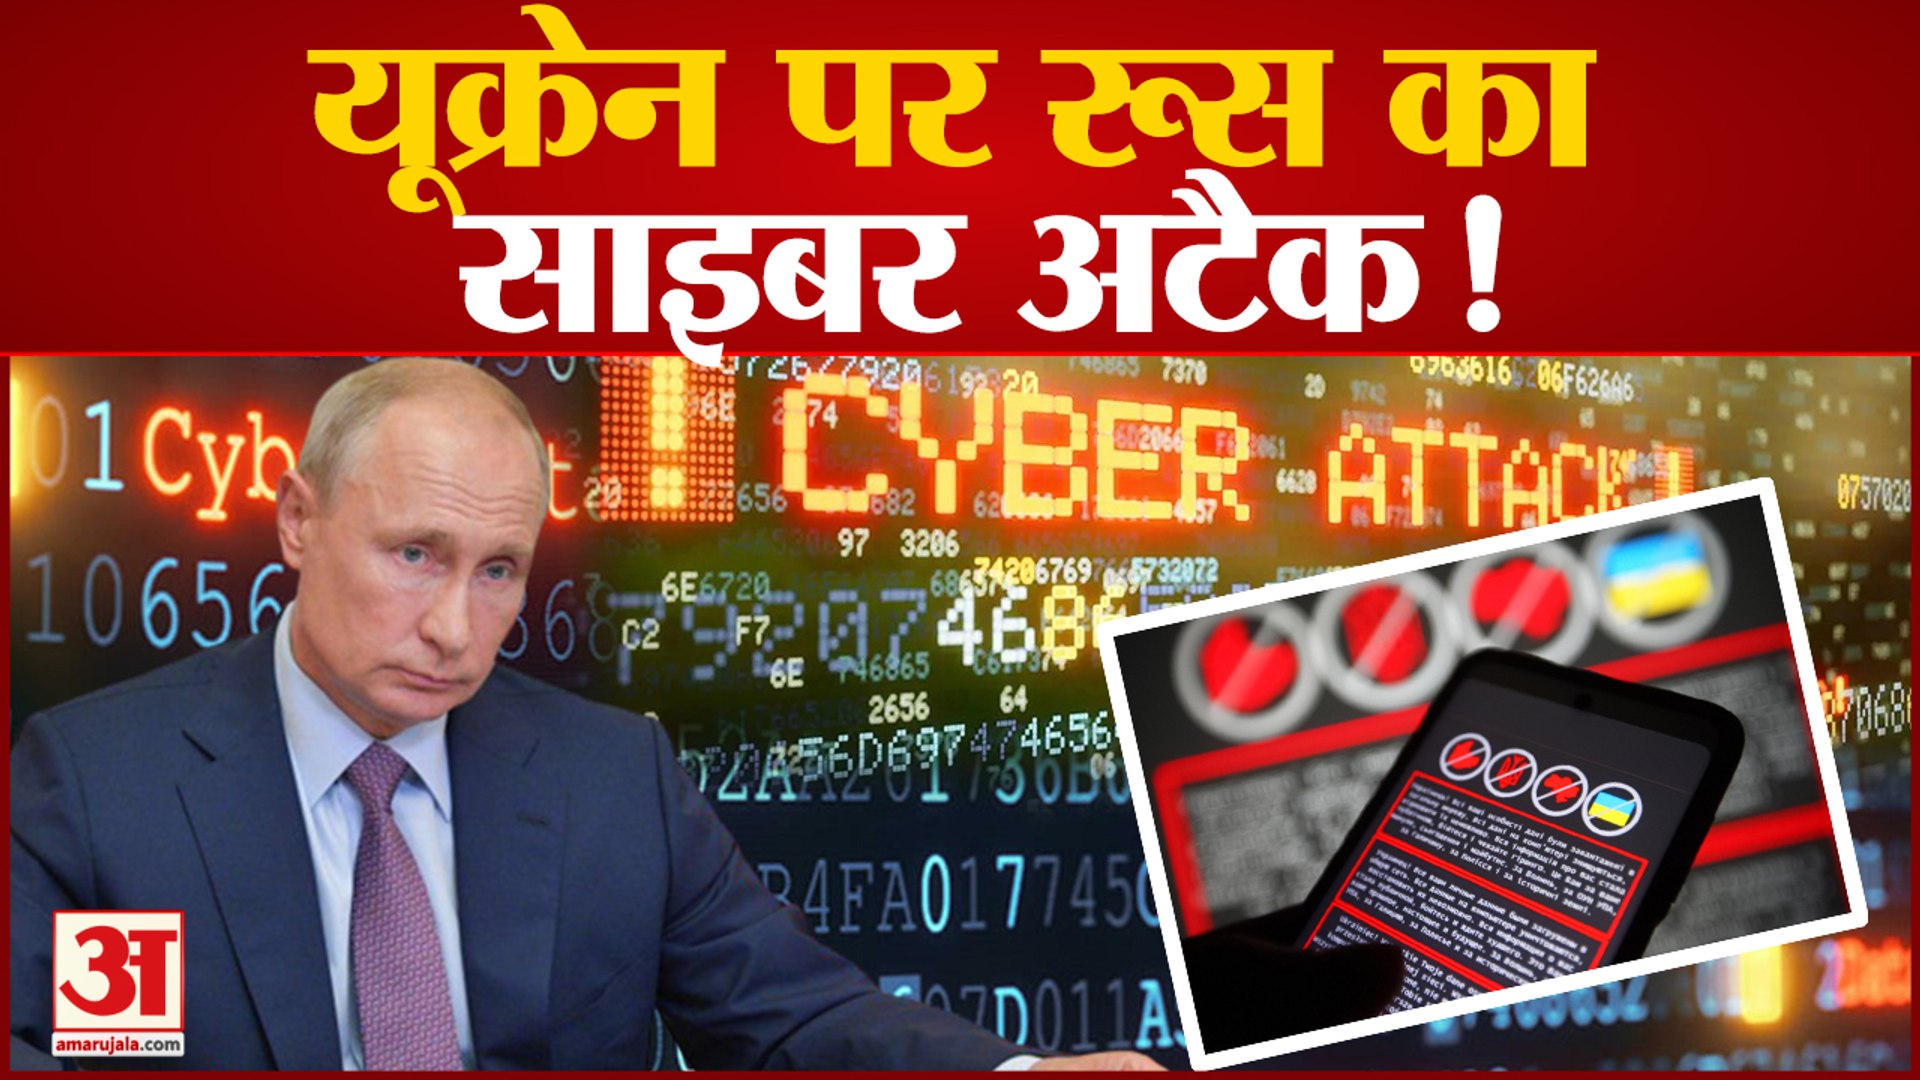 यूक्रेन पर साइबर अटैक,सरकारी वेबसाइट, ऑनलाइन बैंकिंग ठप,रूस पर हमले का आरोप |Cyber Attack on Ukraine